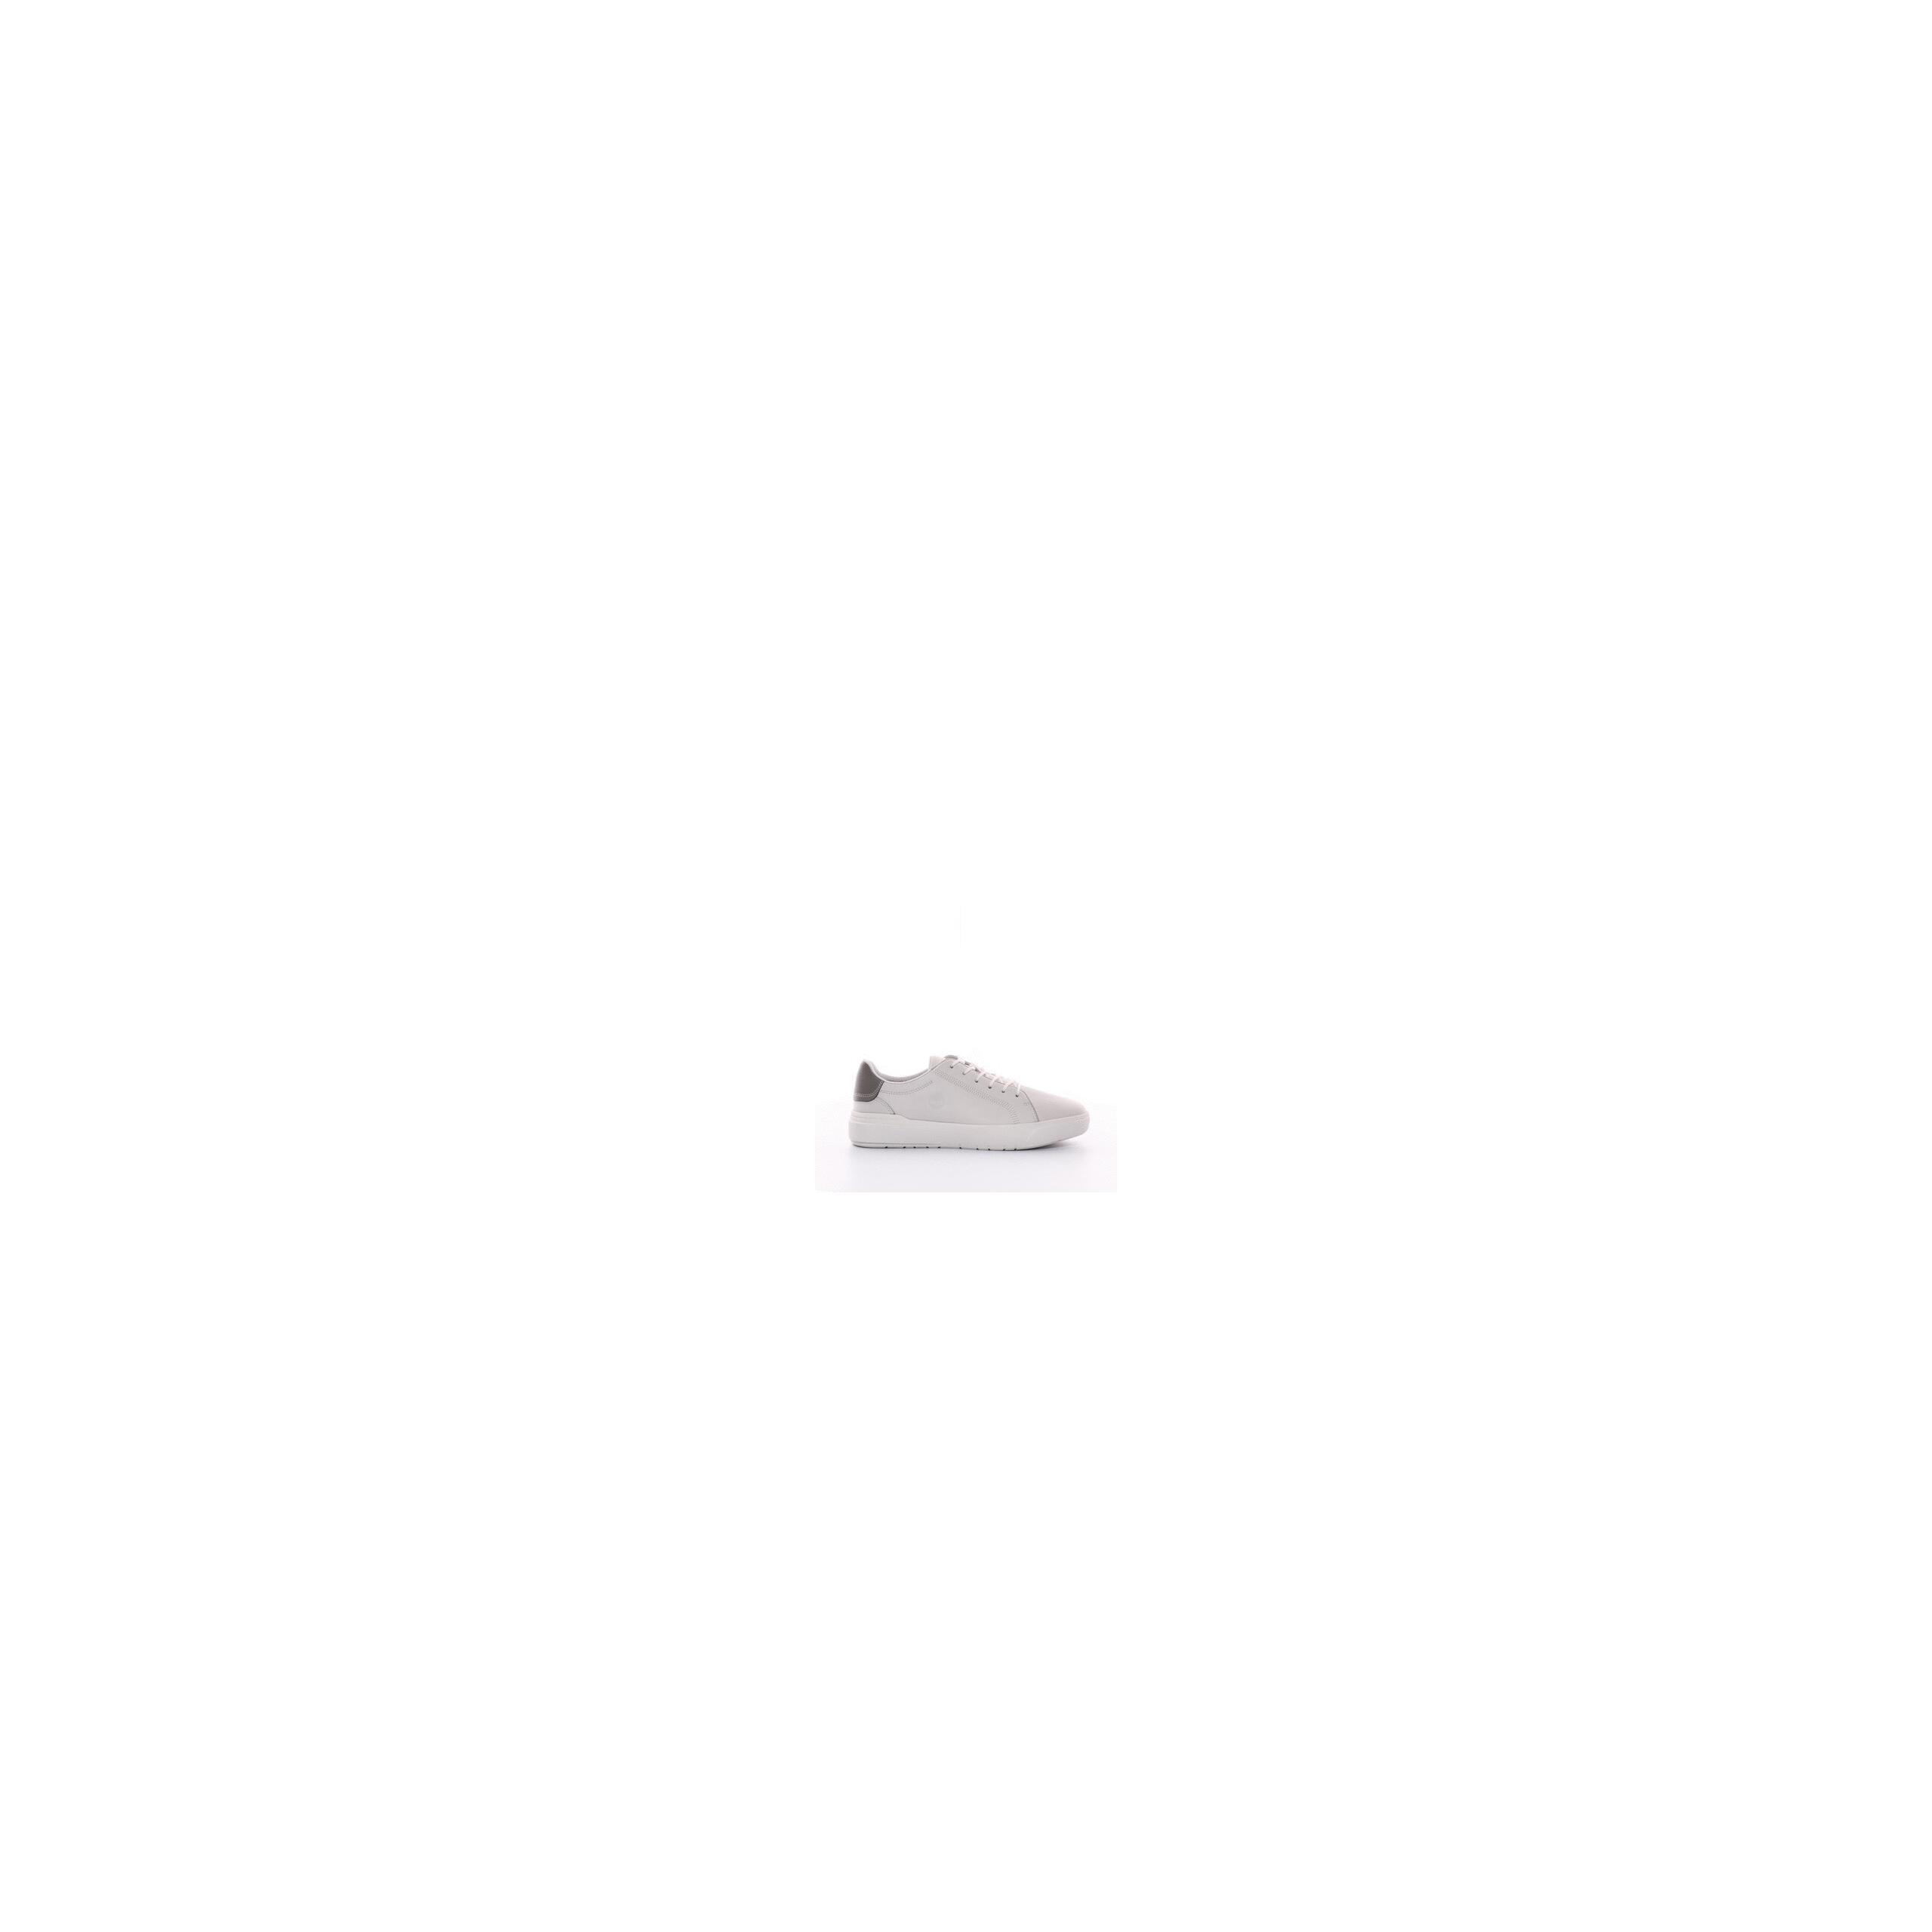 Timberland - Chaussures Seneca bay oxford - Blanc de blanc - 40 EU